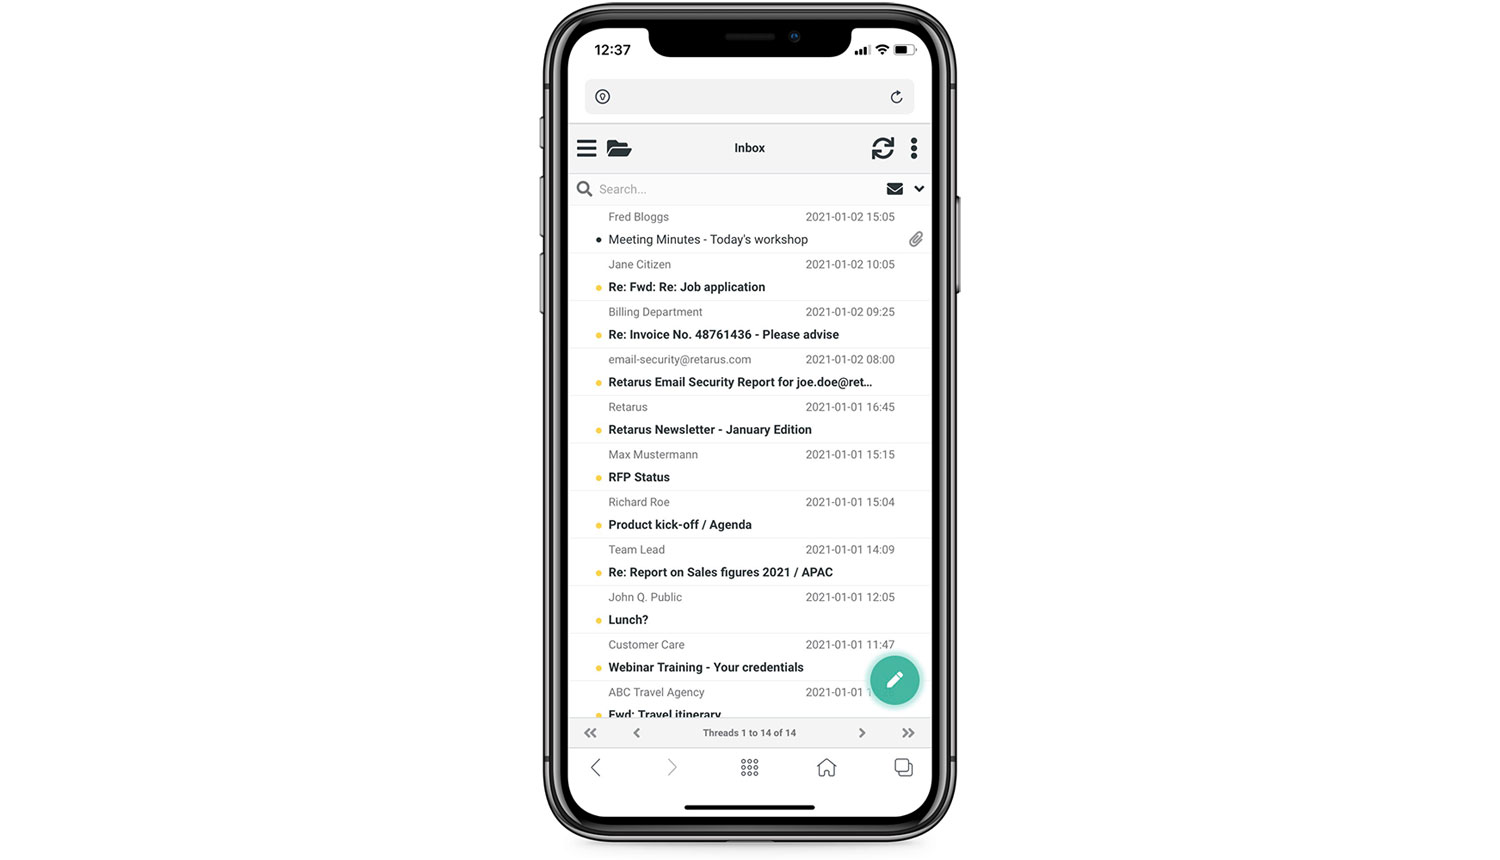 Inbox - Retarus Email Continuity Mobile UI